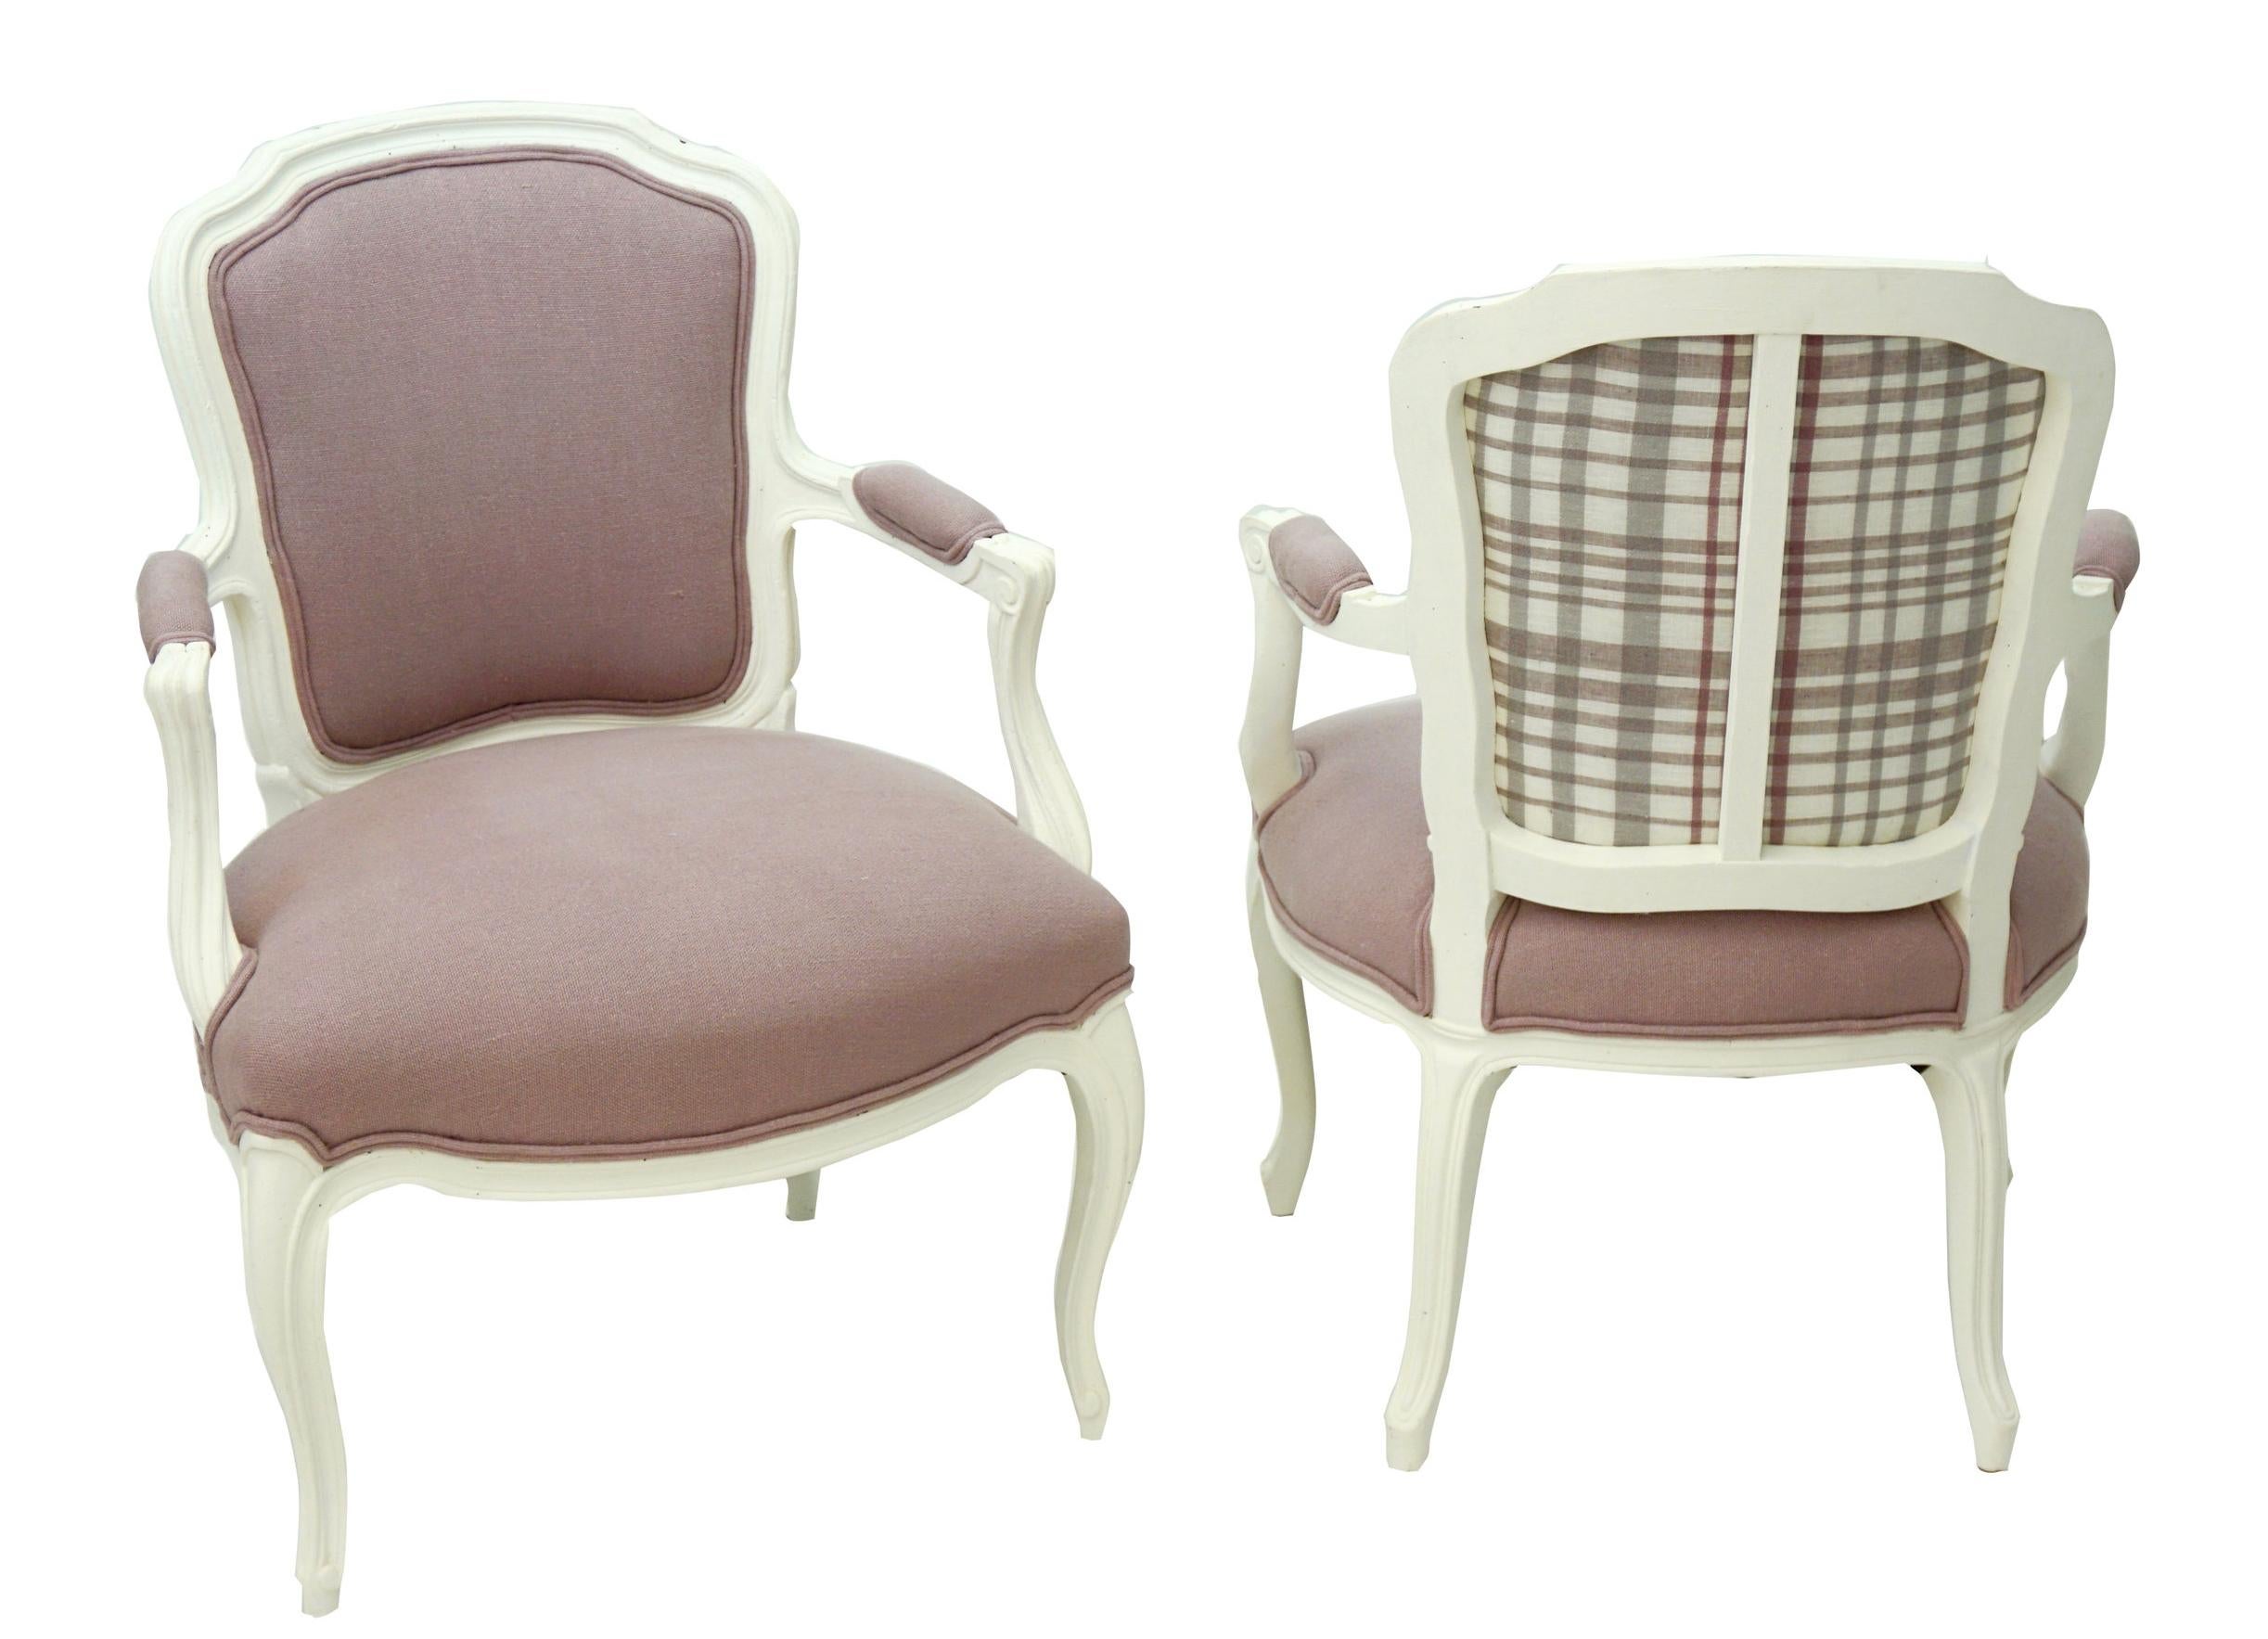 Paire de fauteuils français vintage de style Louis XV. Nouvellement tapissée en lin lavande et peinte en blanc.

Chaque mesure : 14,5